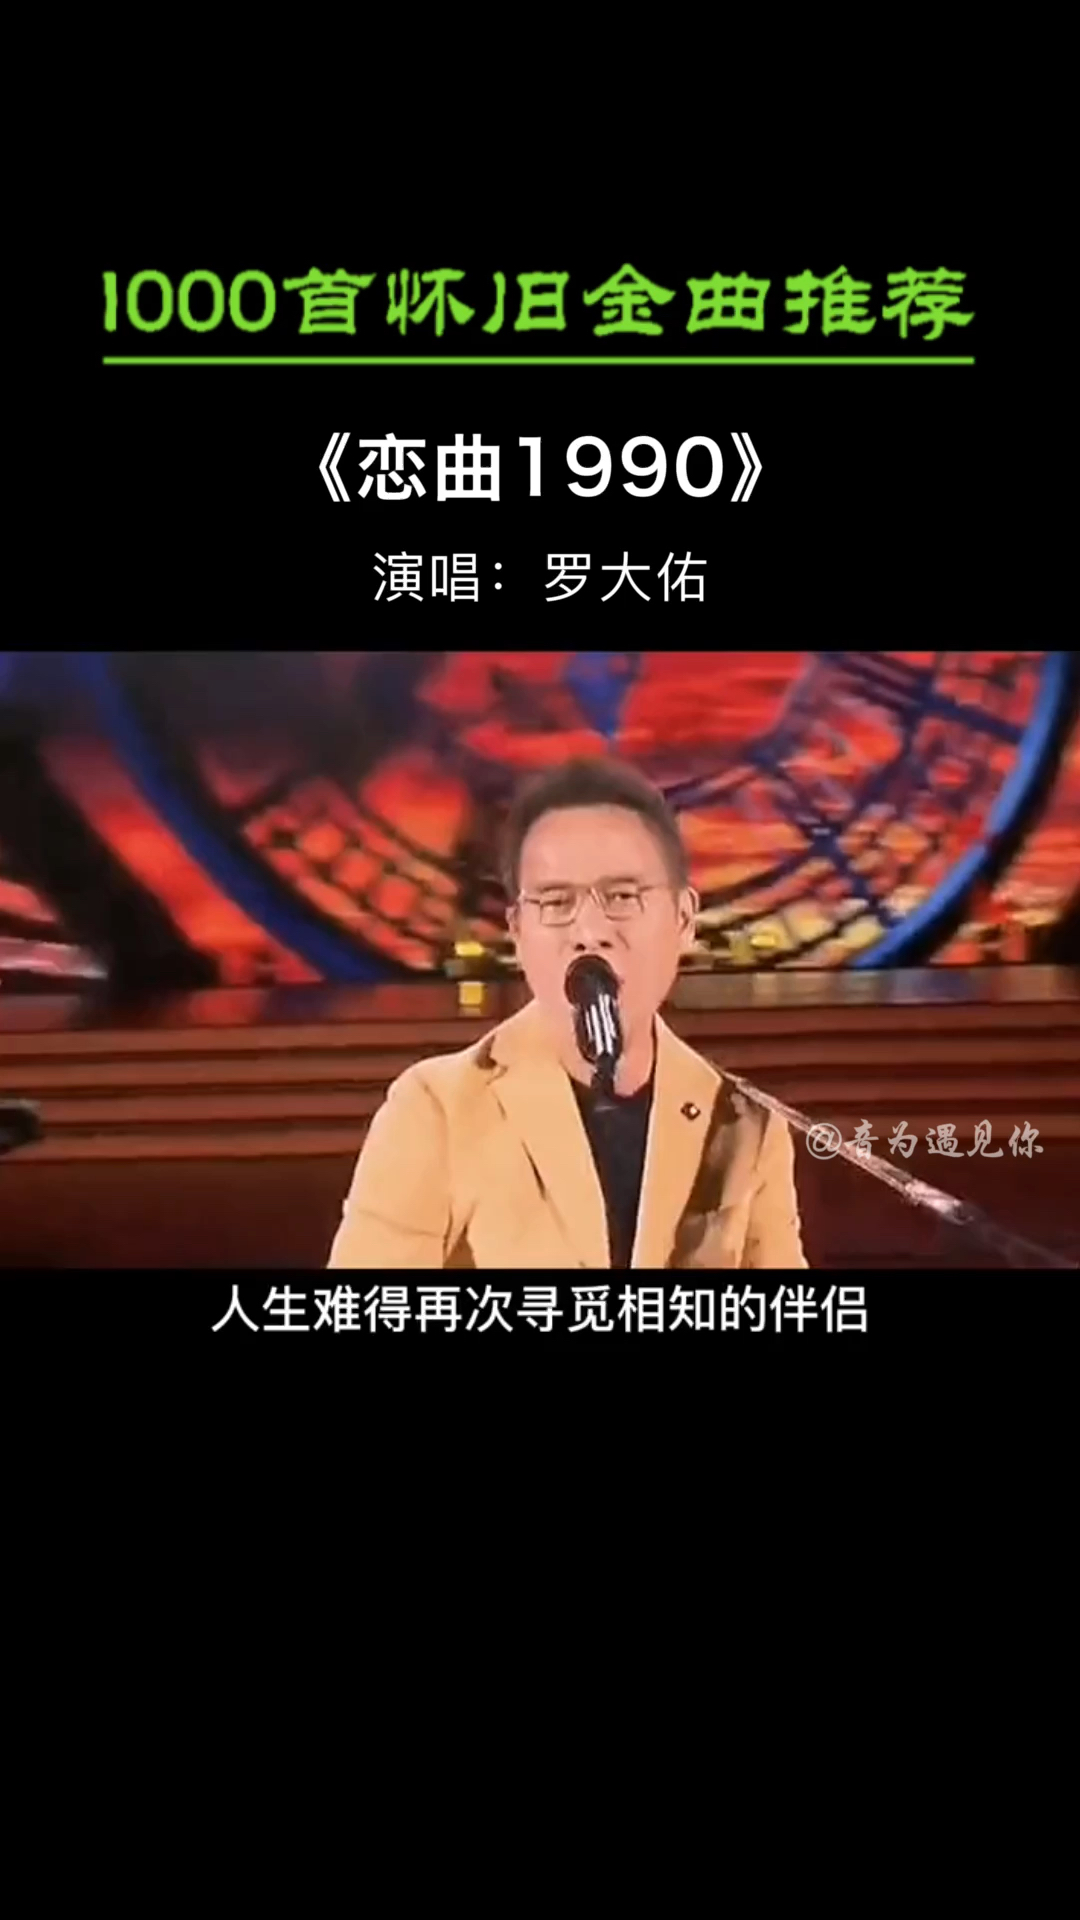 恋曲1990粤语版图片